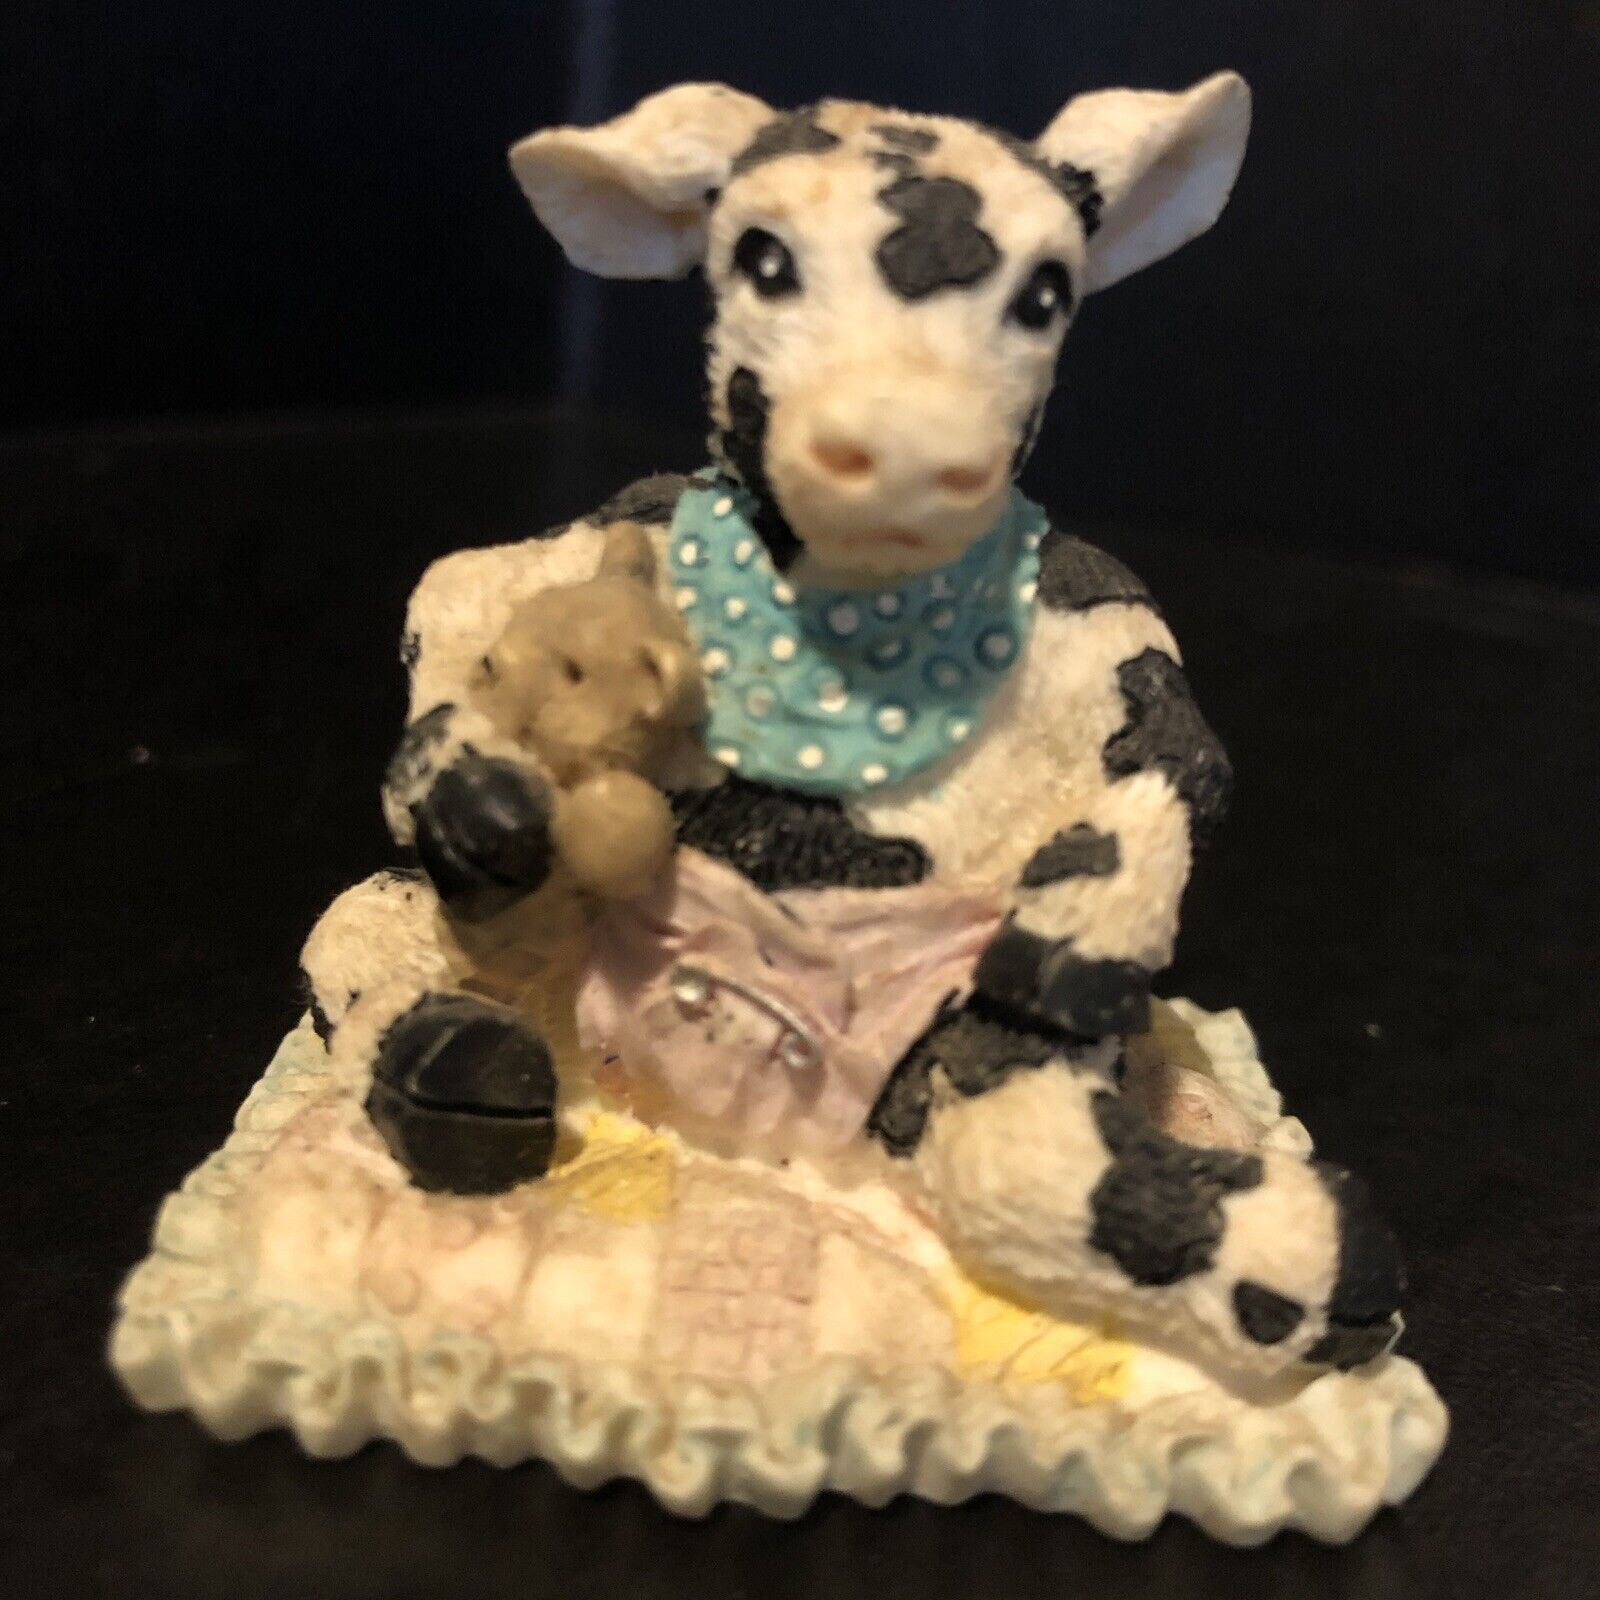 Cowtown 🐄 li’l Orphan Angus Ganz 1992 TS cow figurine apprx 2” Rare